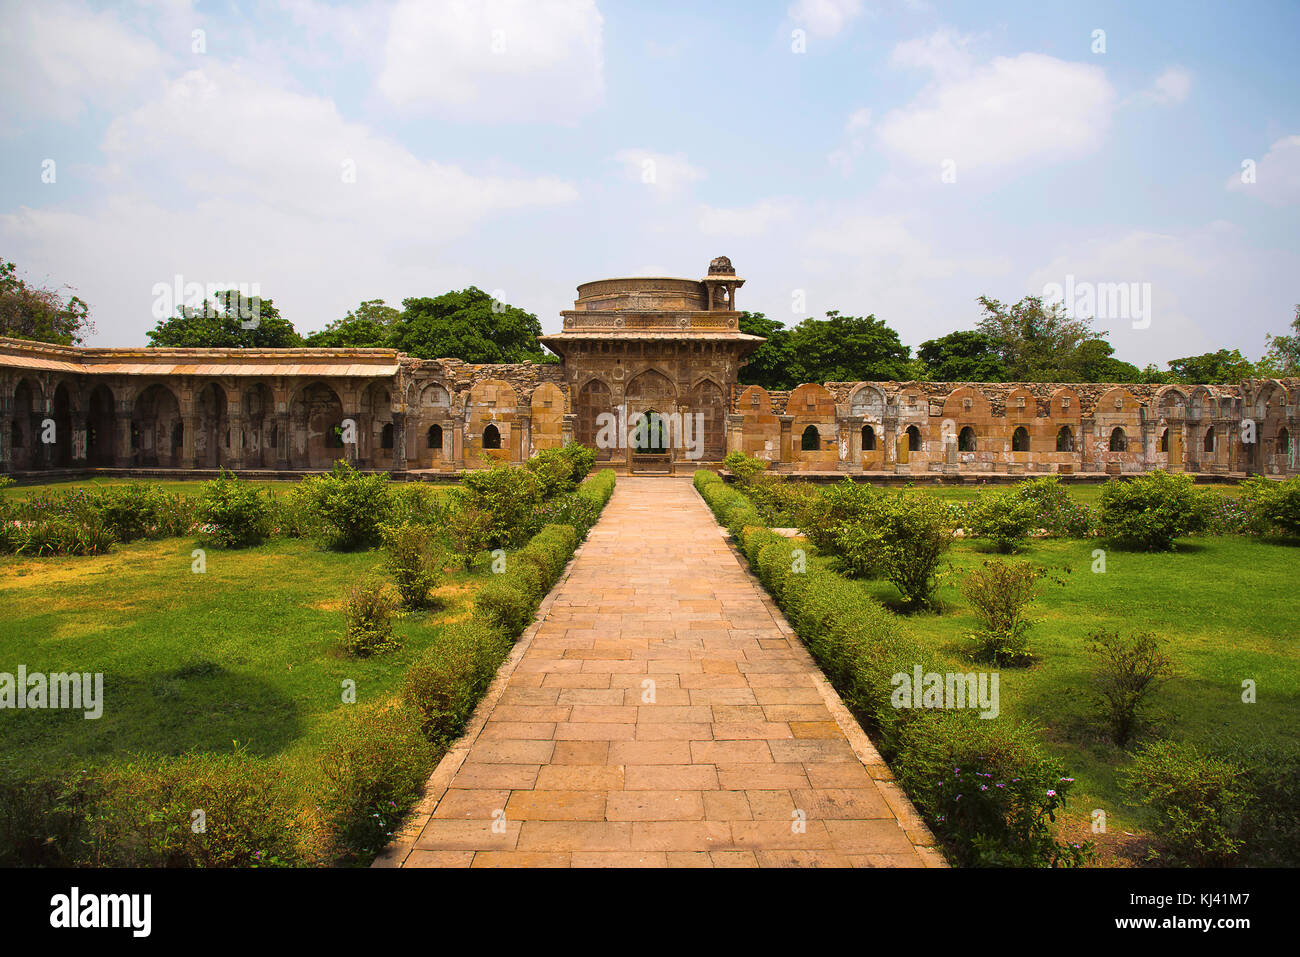 Außenansicht einer großen Kuppel über einem Podium gebaut, Jami Masjid (Moschee), UNESCO-geschützten Champaner - Pavagadh Archäologischen Park, Gujarat, Indien. Stockfoto